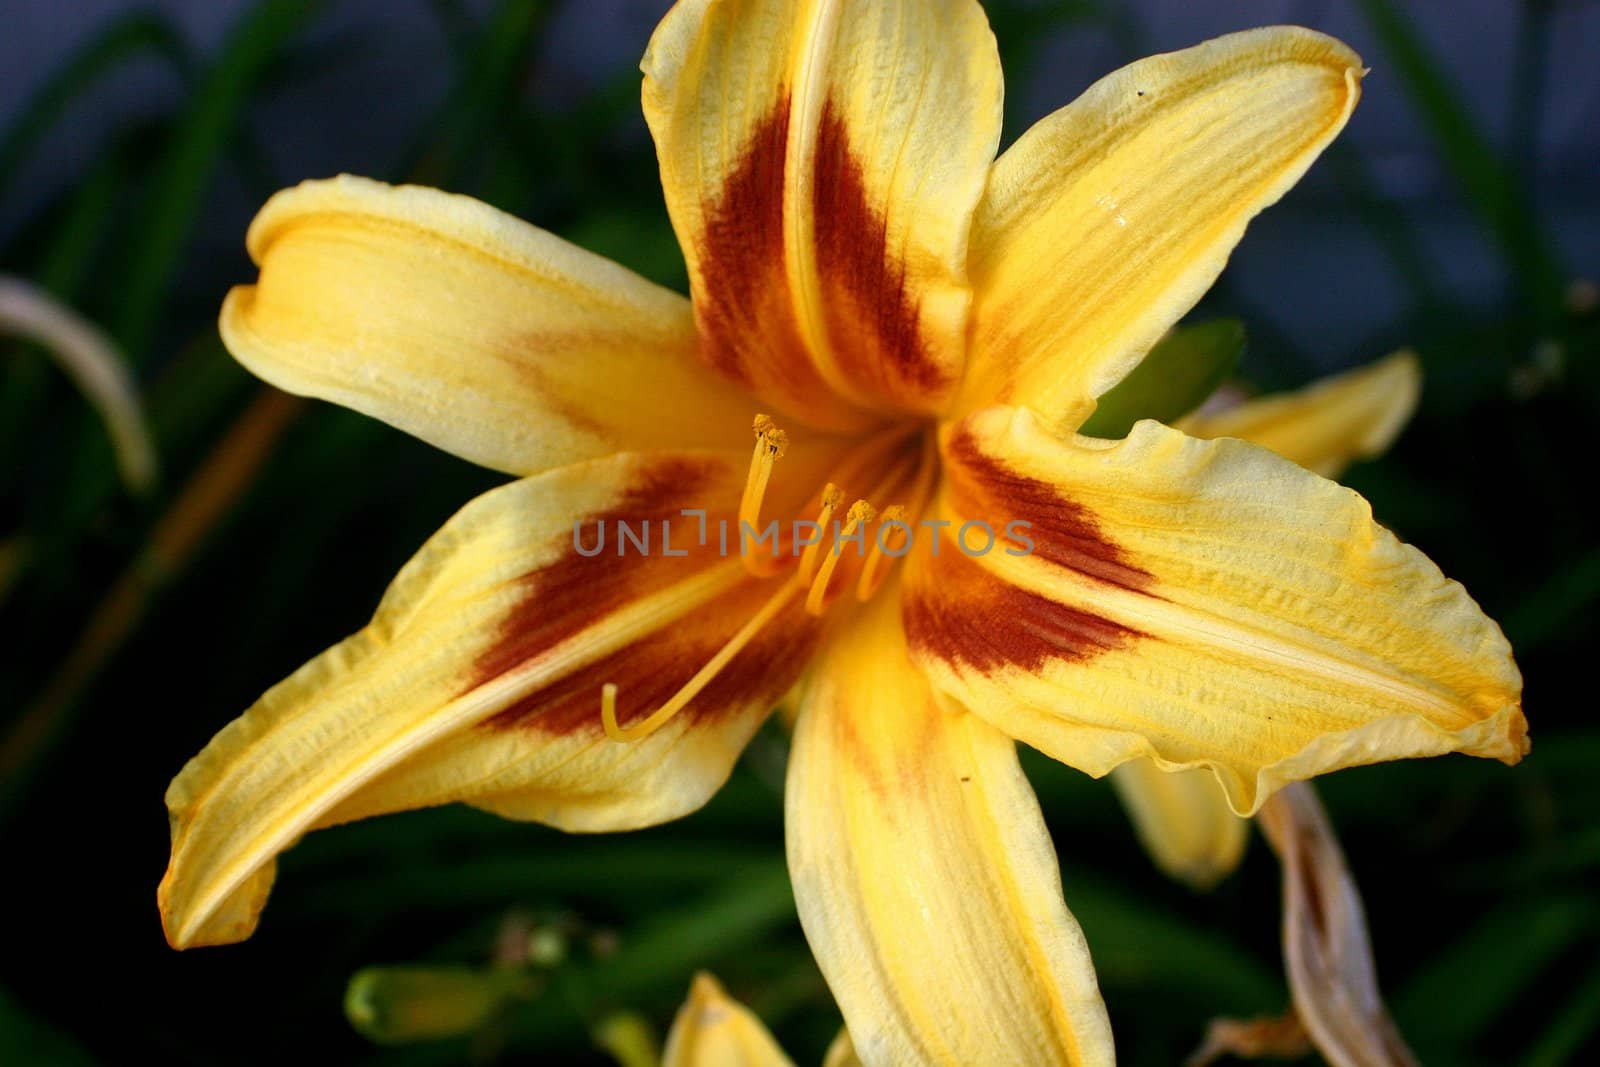 Details from golden Orchid flower from carabean garden